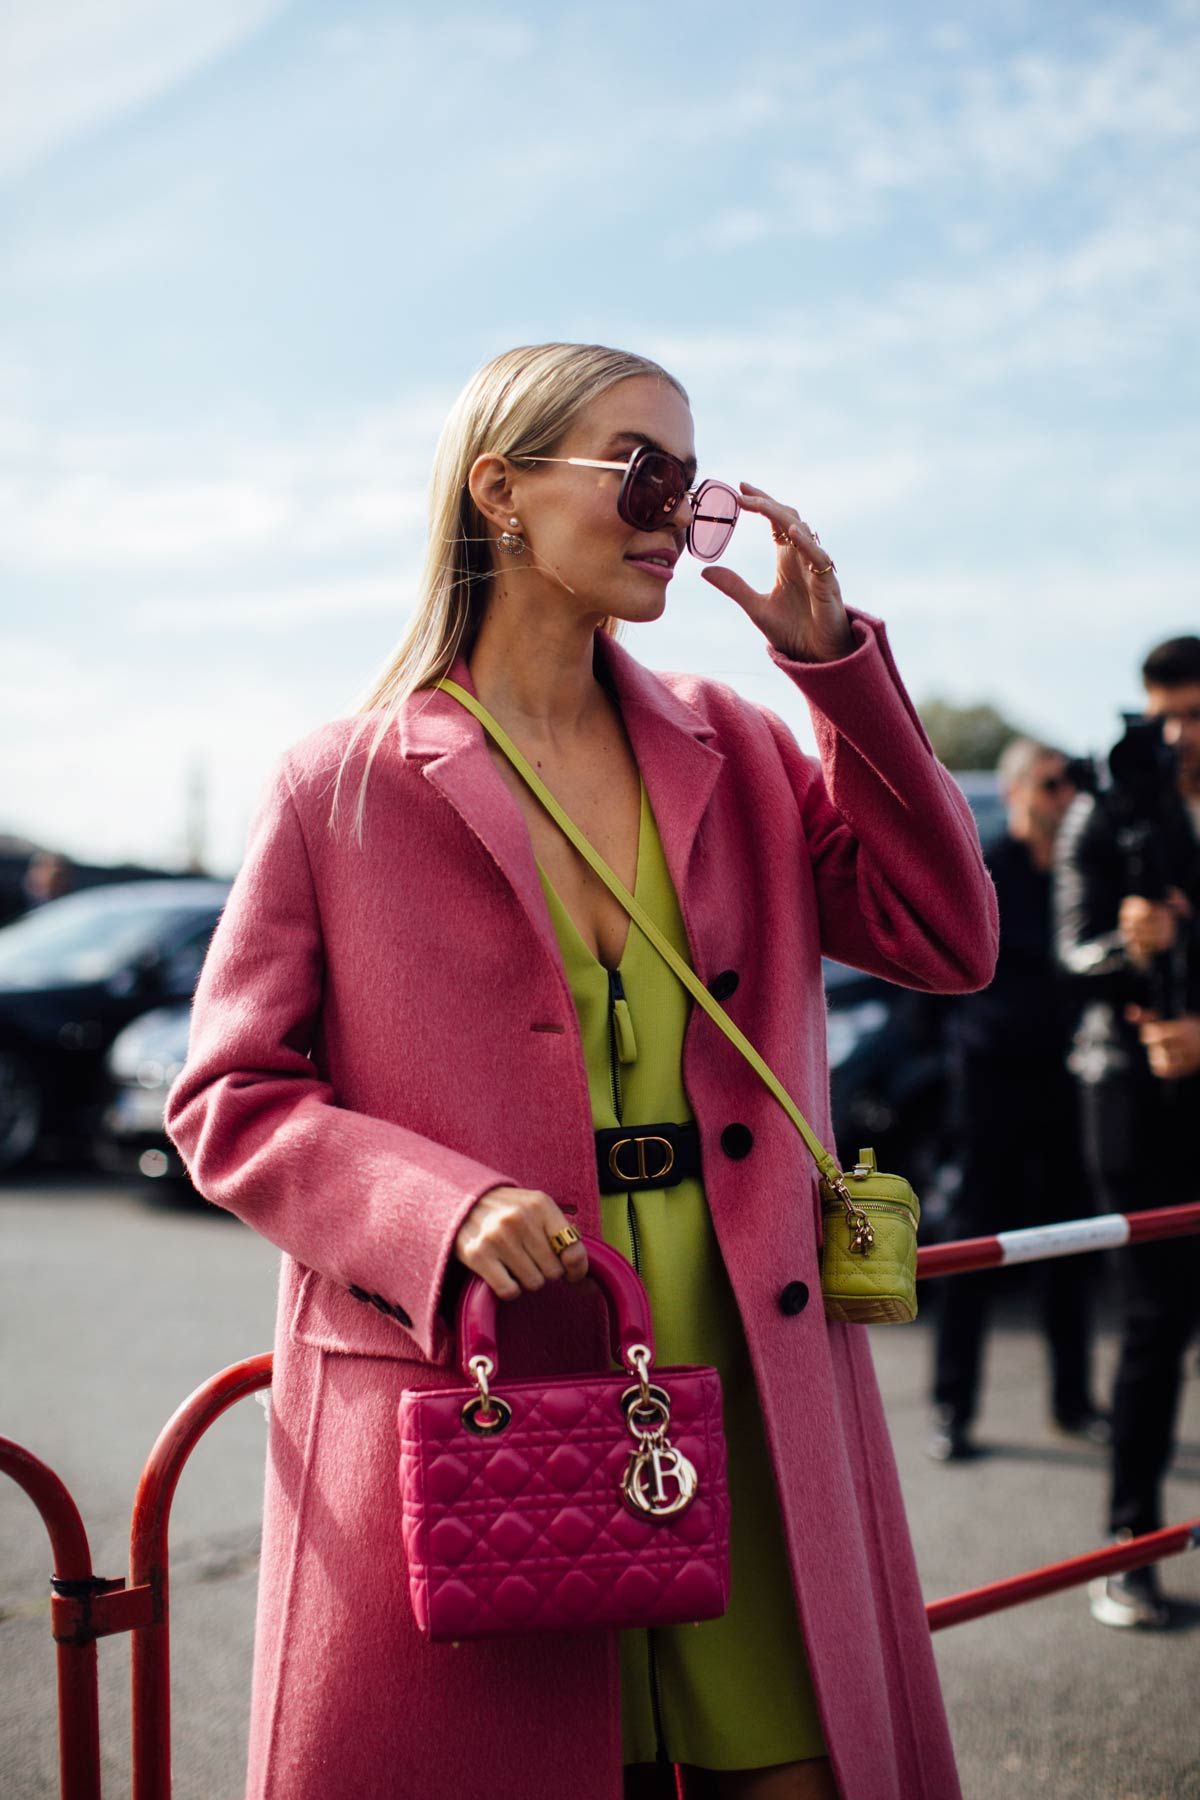 La 'influencer' alemana Leonie Hanne con look rosa en el 'street style' de París